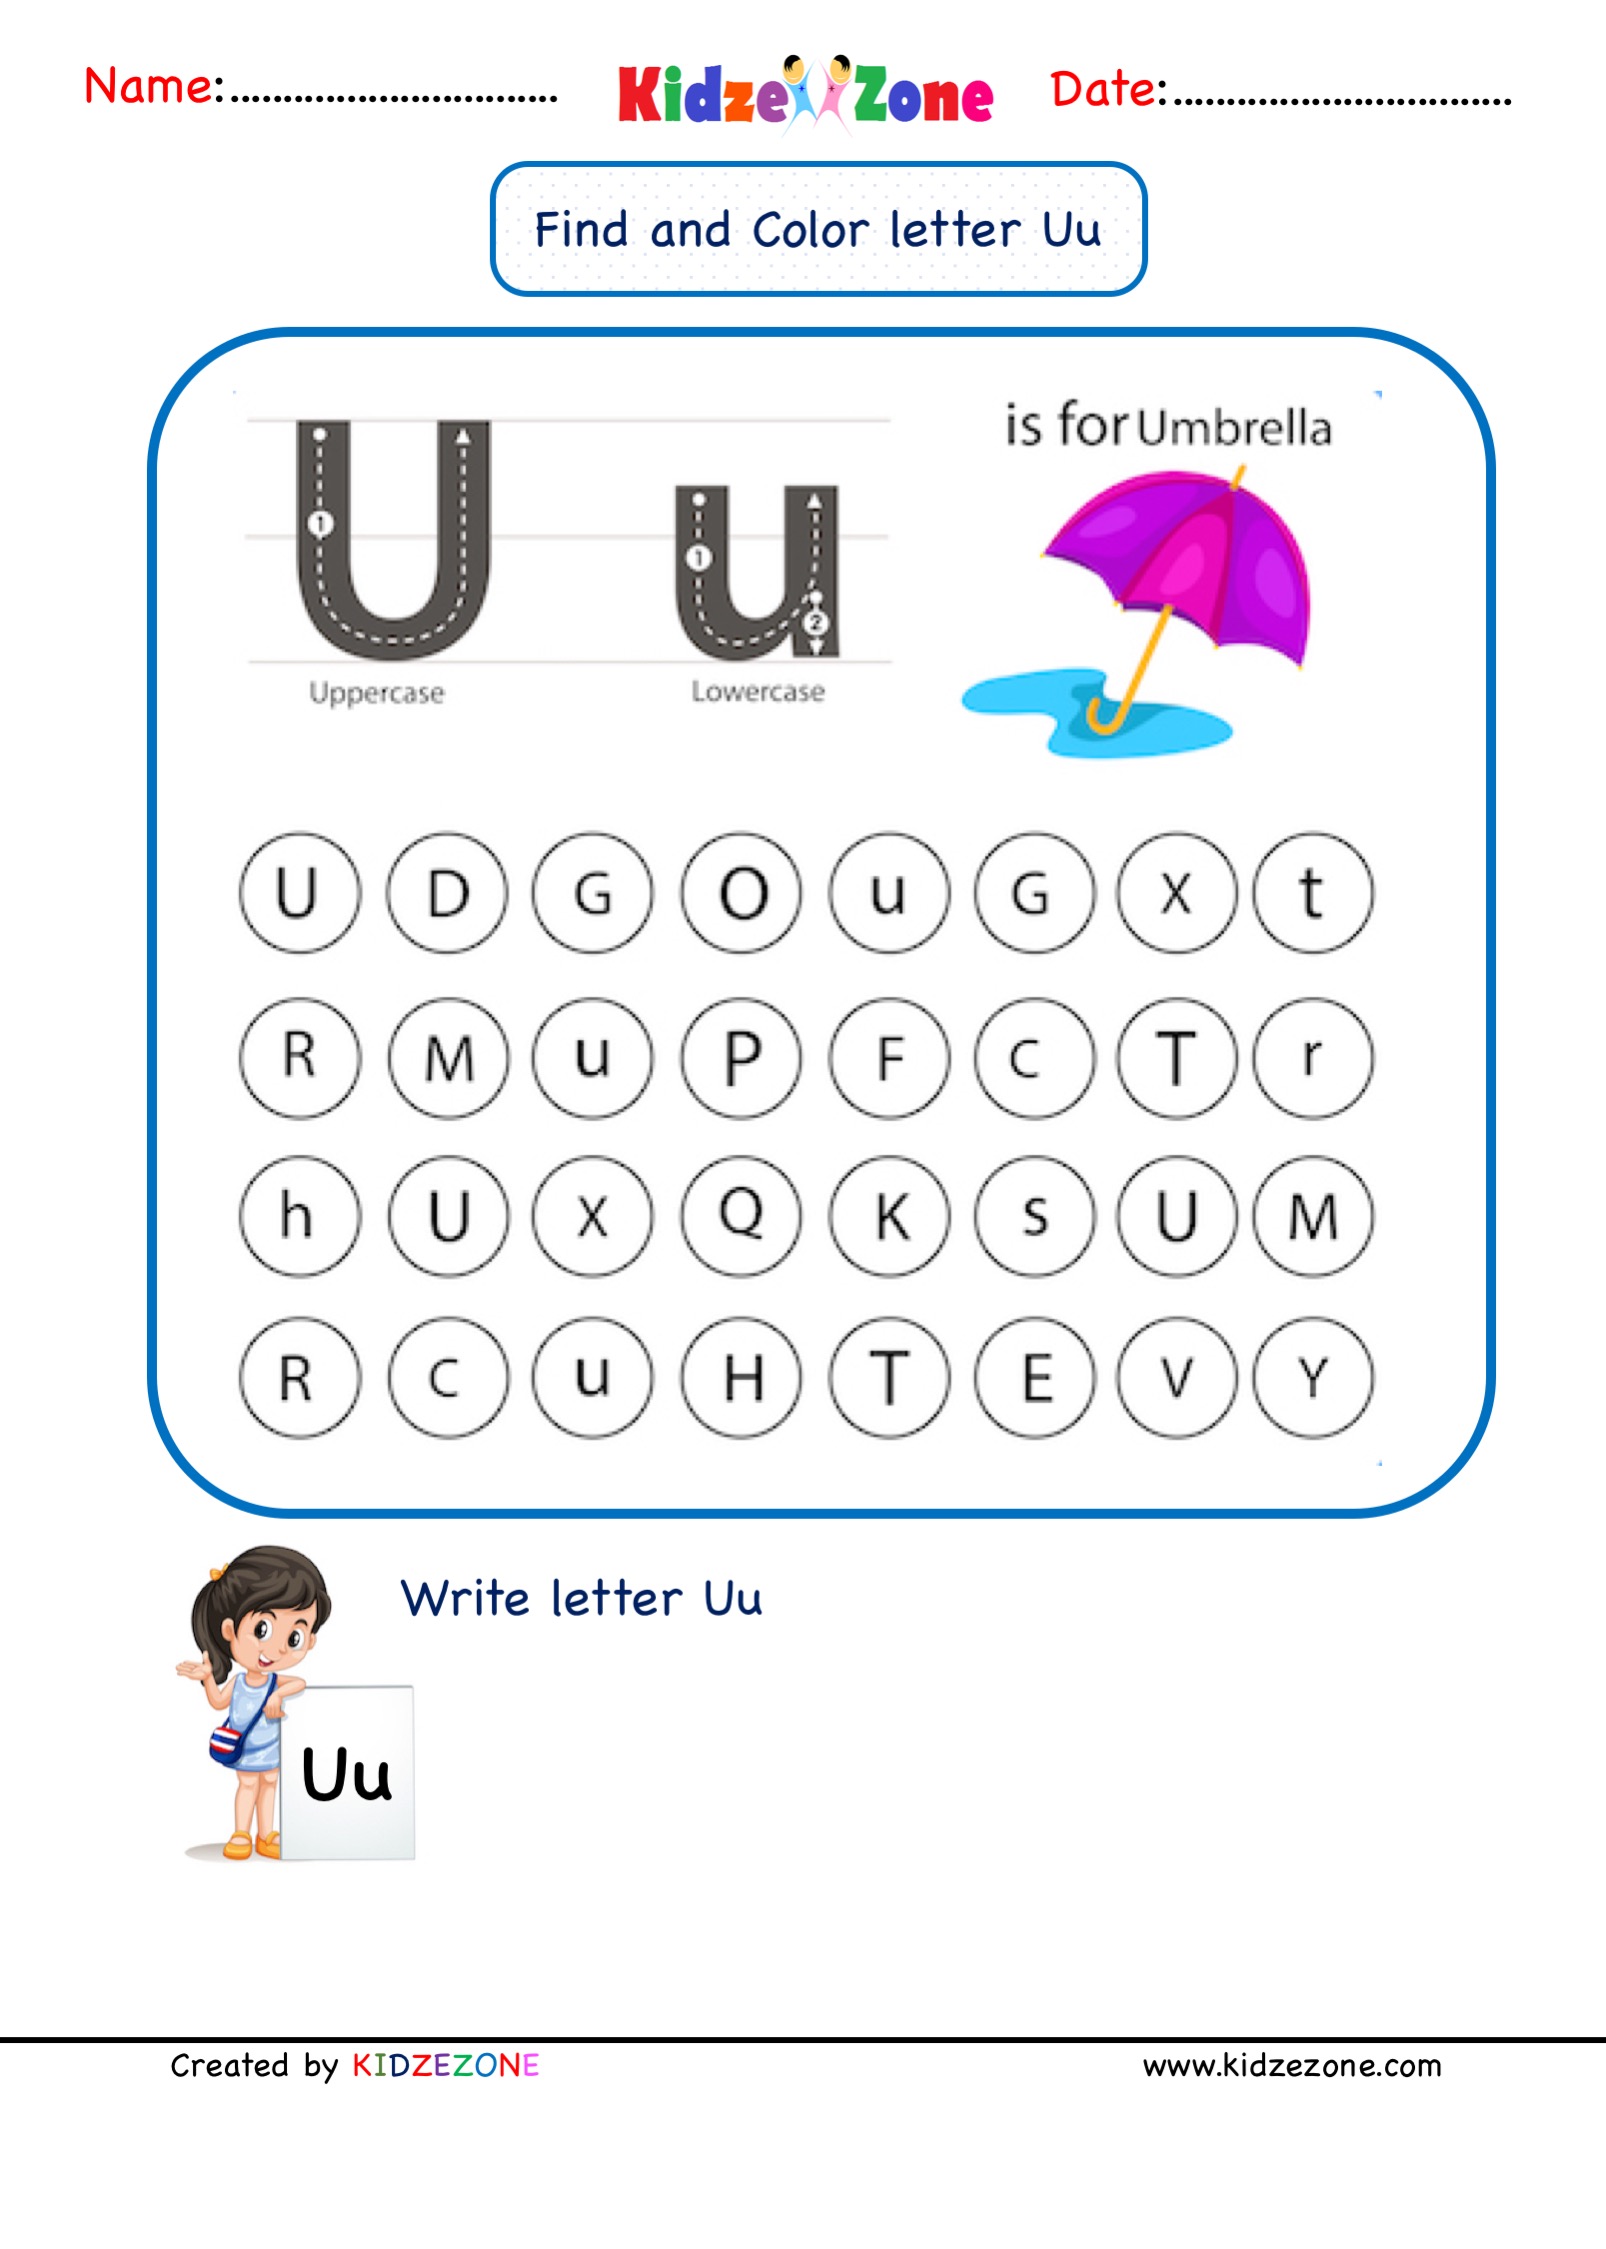 kindergarten-letter-u-worksheets-find-and-color-kidzezone